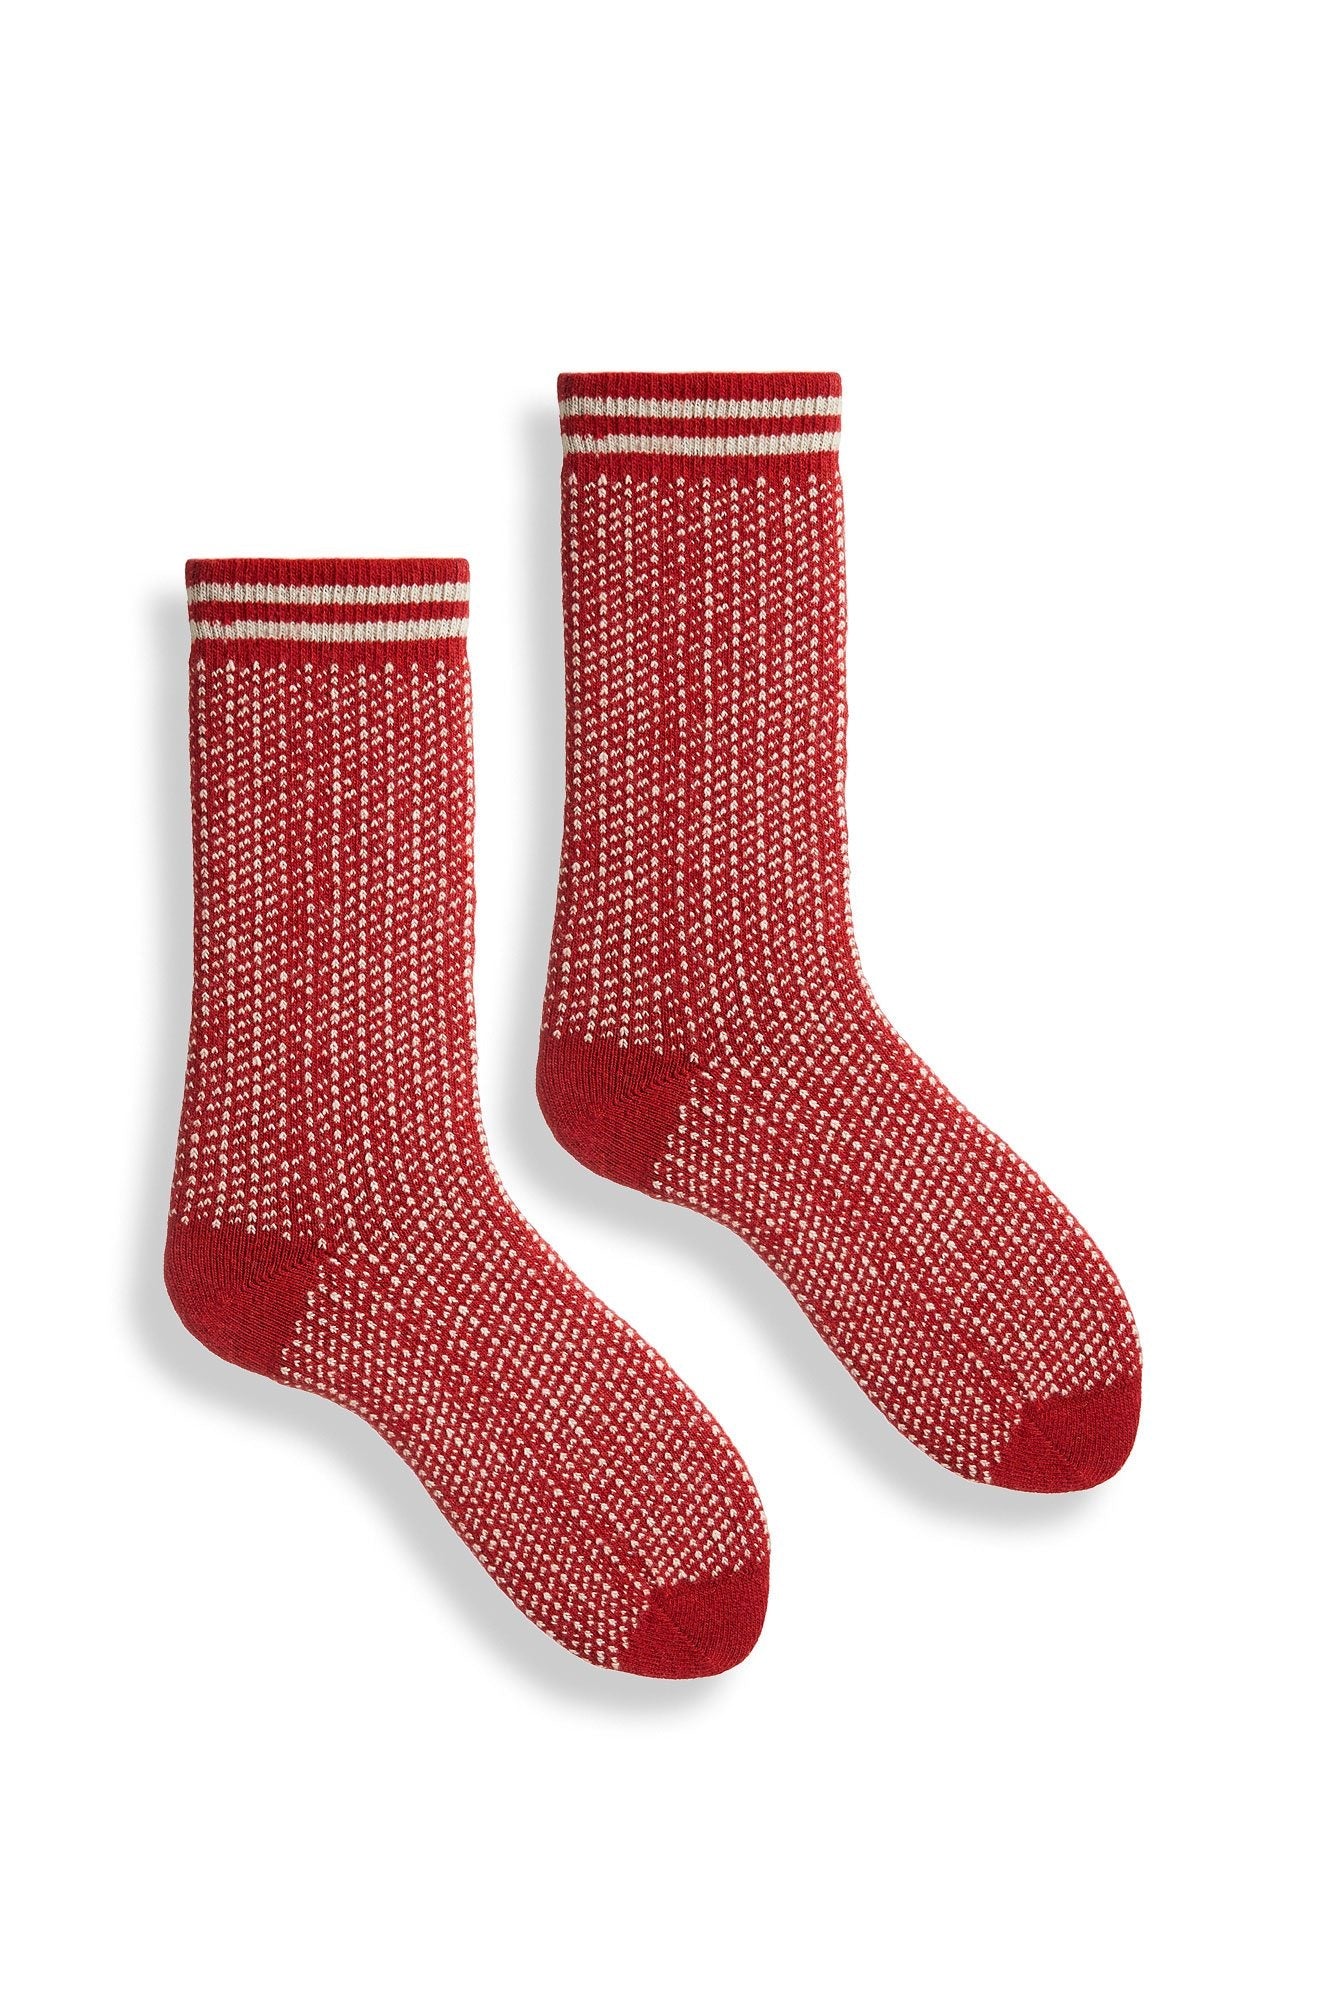 women's nordic birdseye wool cashmere crew socks Women WC Socks lisa b. red 